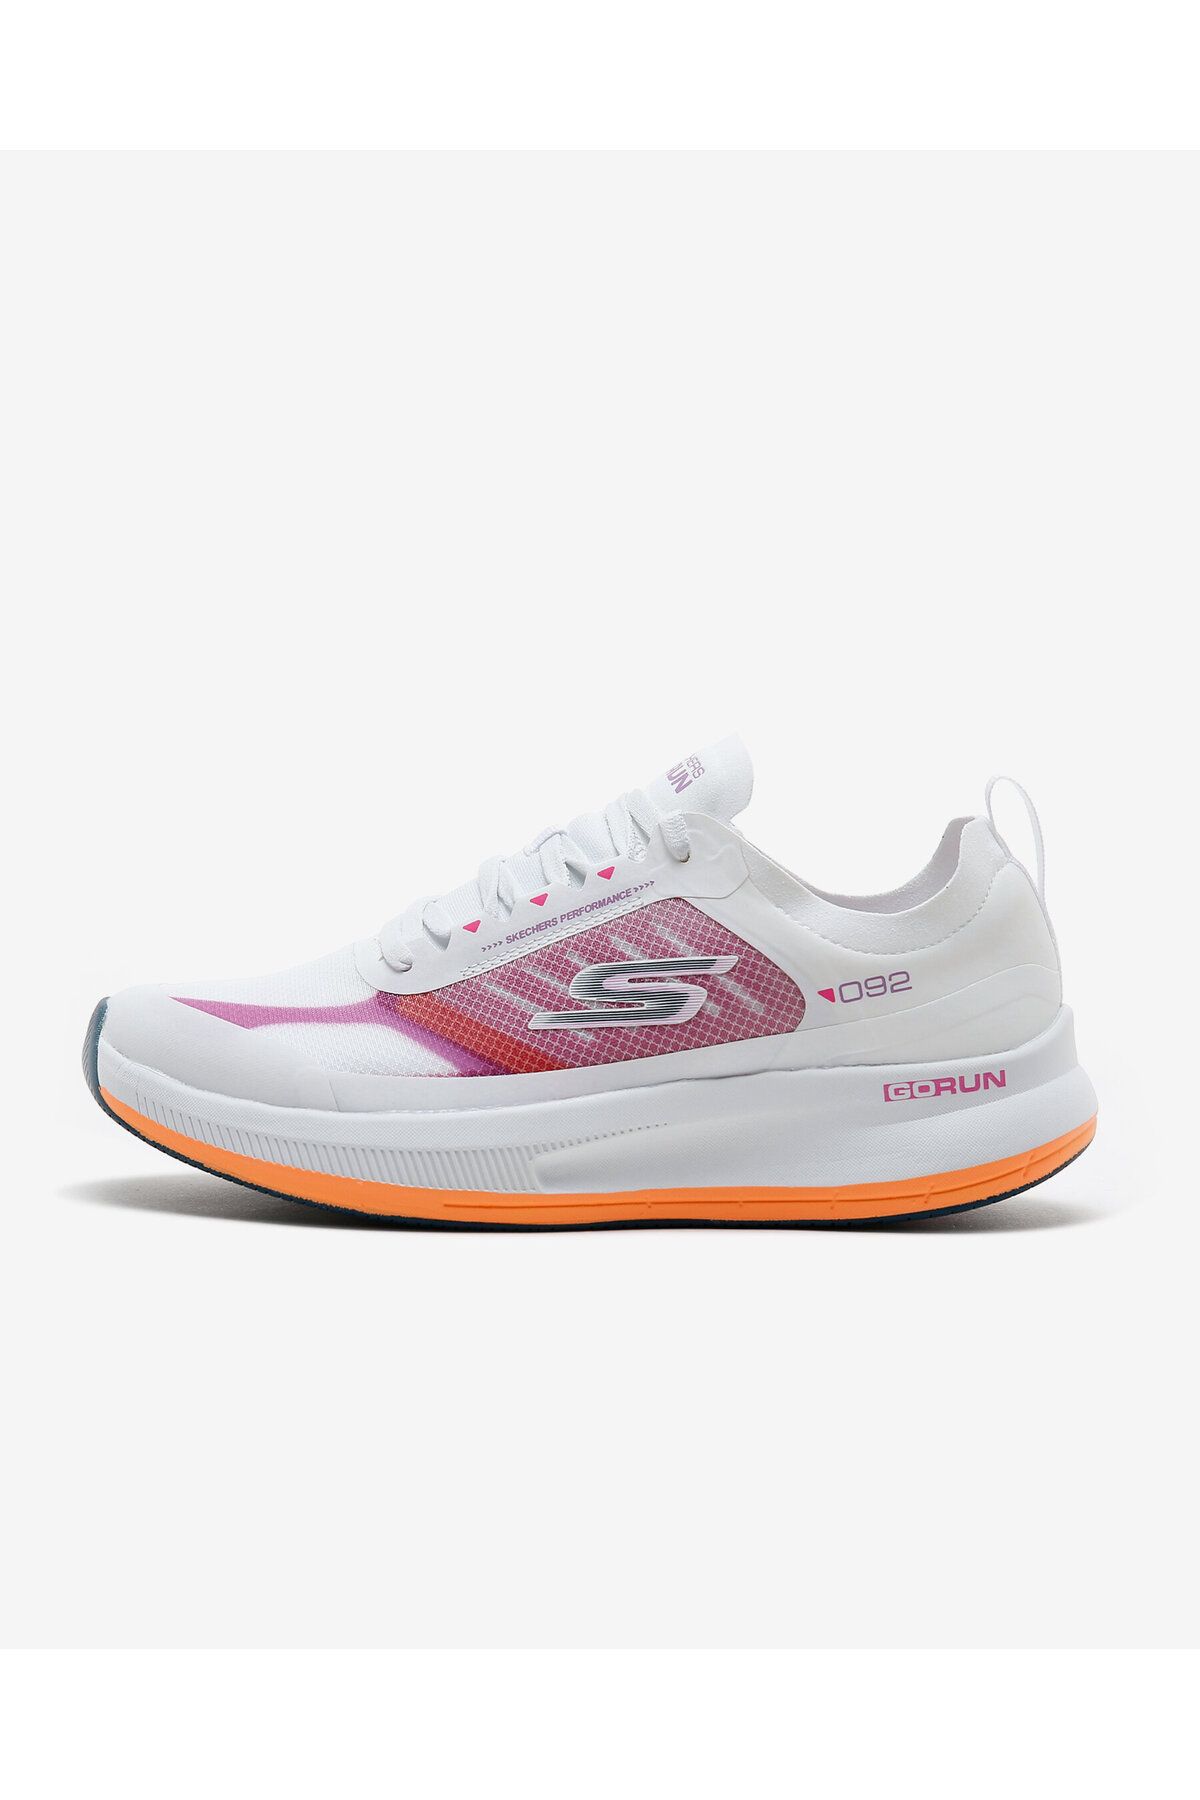 Skechers Go Run Pulse - Fast Stride Kadın Beyaz Koşu Ayakkabısı 128658 Wmlt